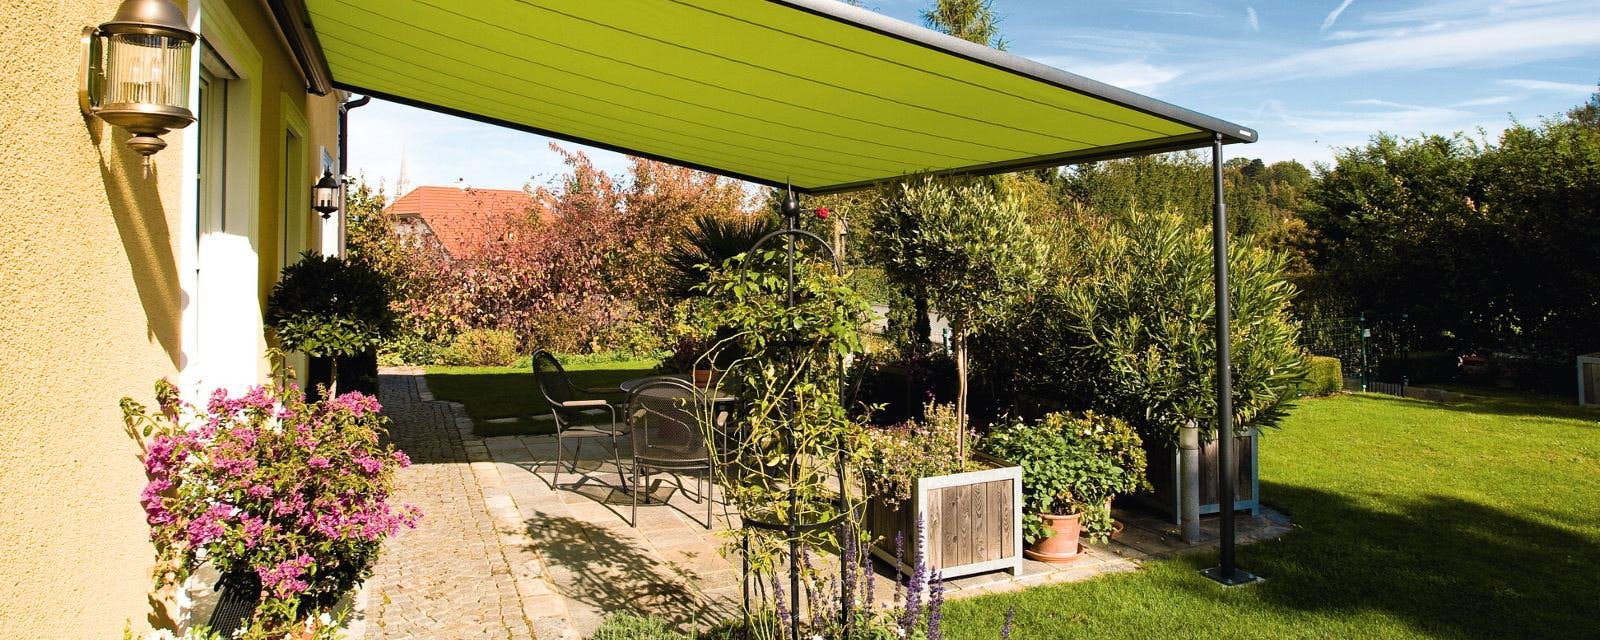 Markisen für Terrassen in Berlin | Beispiel 1: Markilux Pergola 210 - Elegante Lösung für Ihre Terrasse